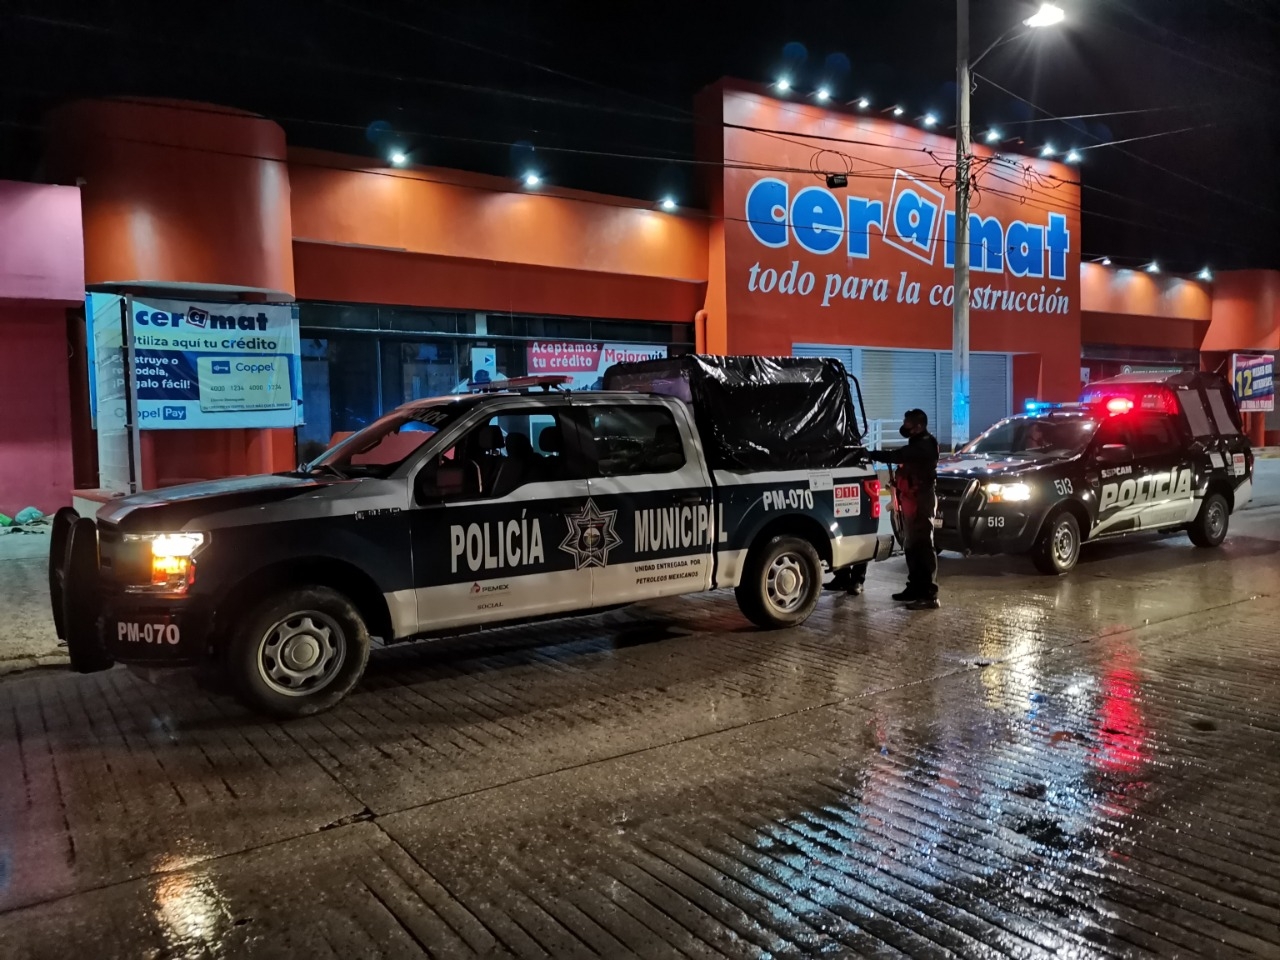 Intensa movilización policiaca por presunto robo en comercio de Ciudad del Carmen